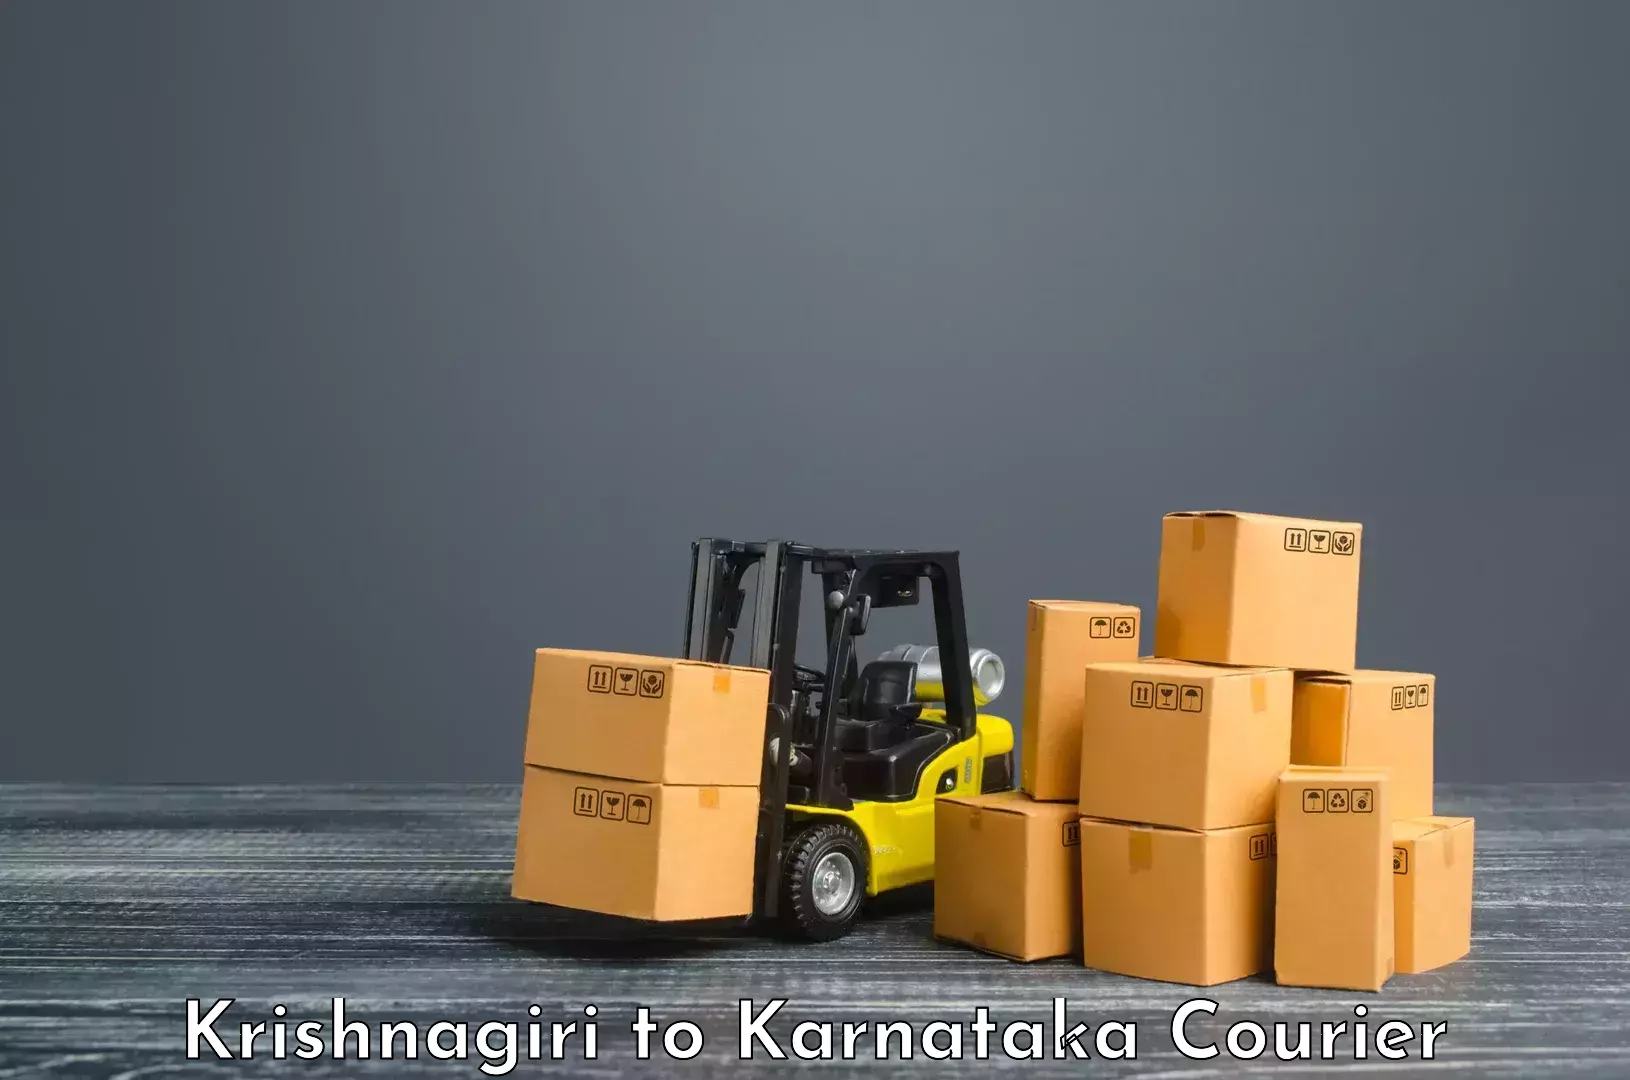 24/7 courier service Krishnagiri to Kanjarakatte